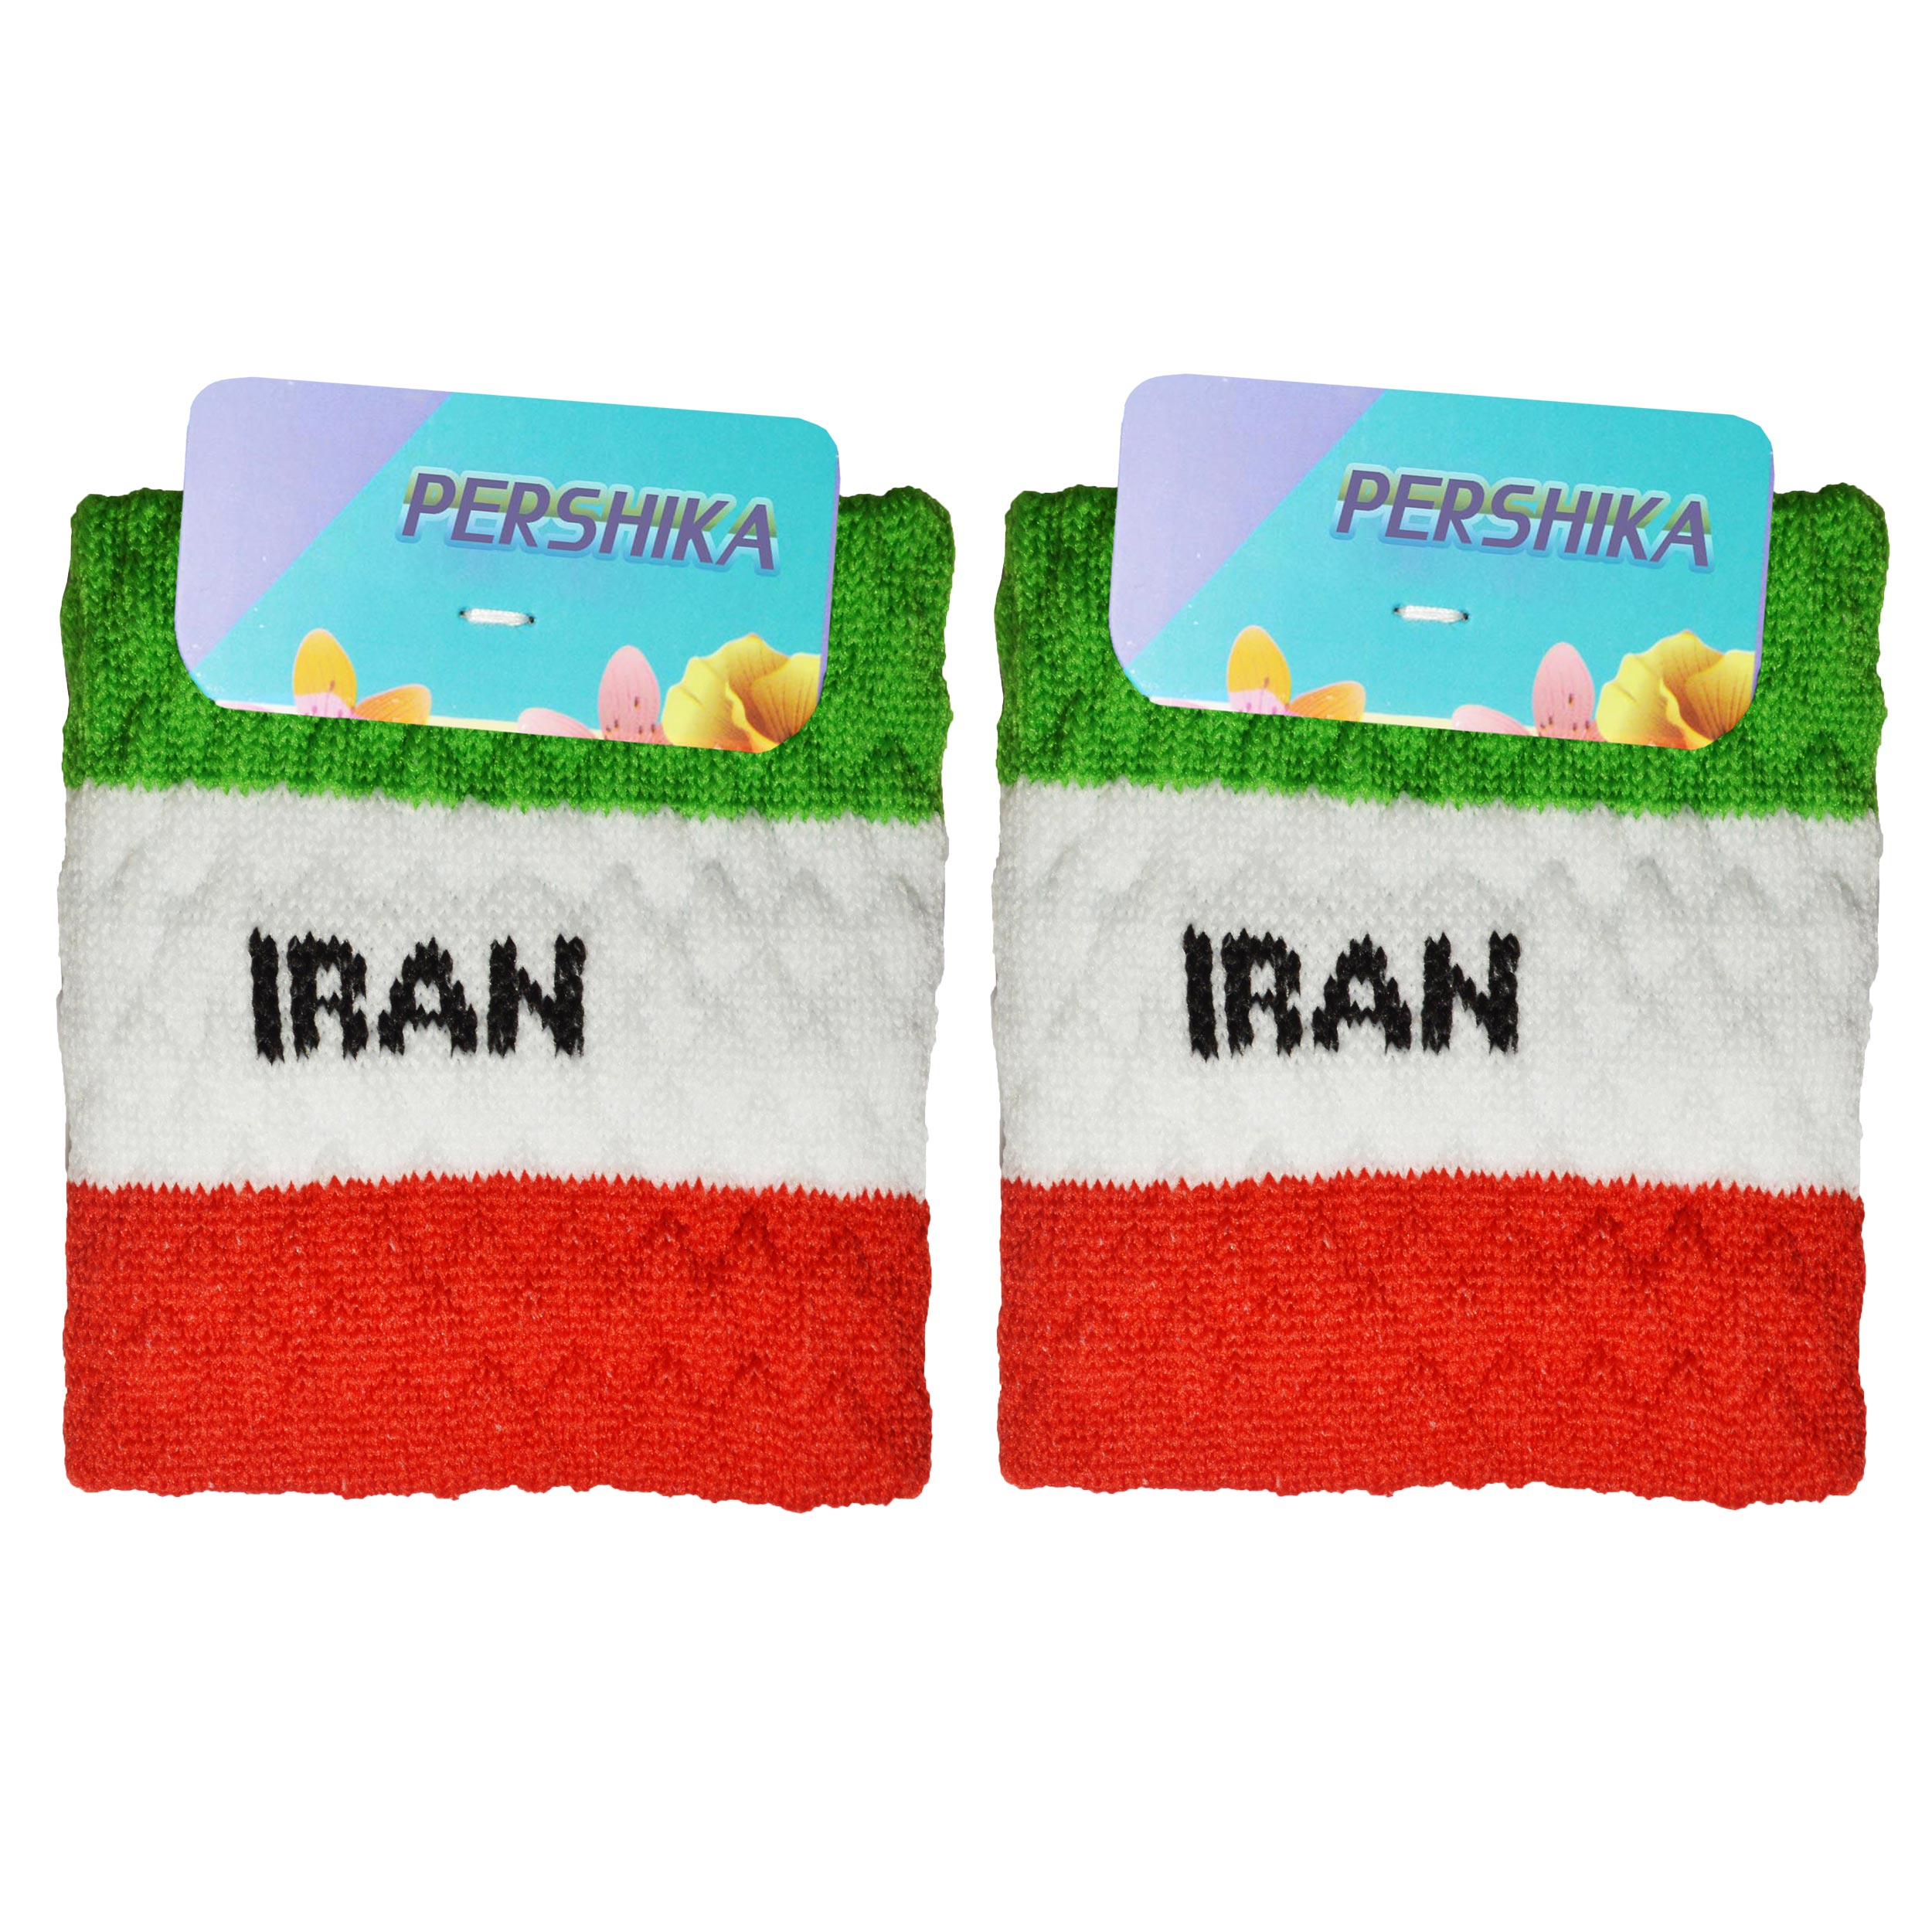 مچ بند ورزشی پرشیکا طرح پرچم کشور ایران بسته 2 عددی -  - 1